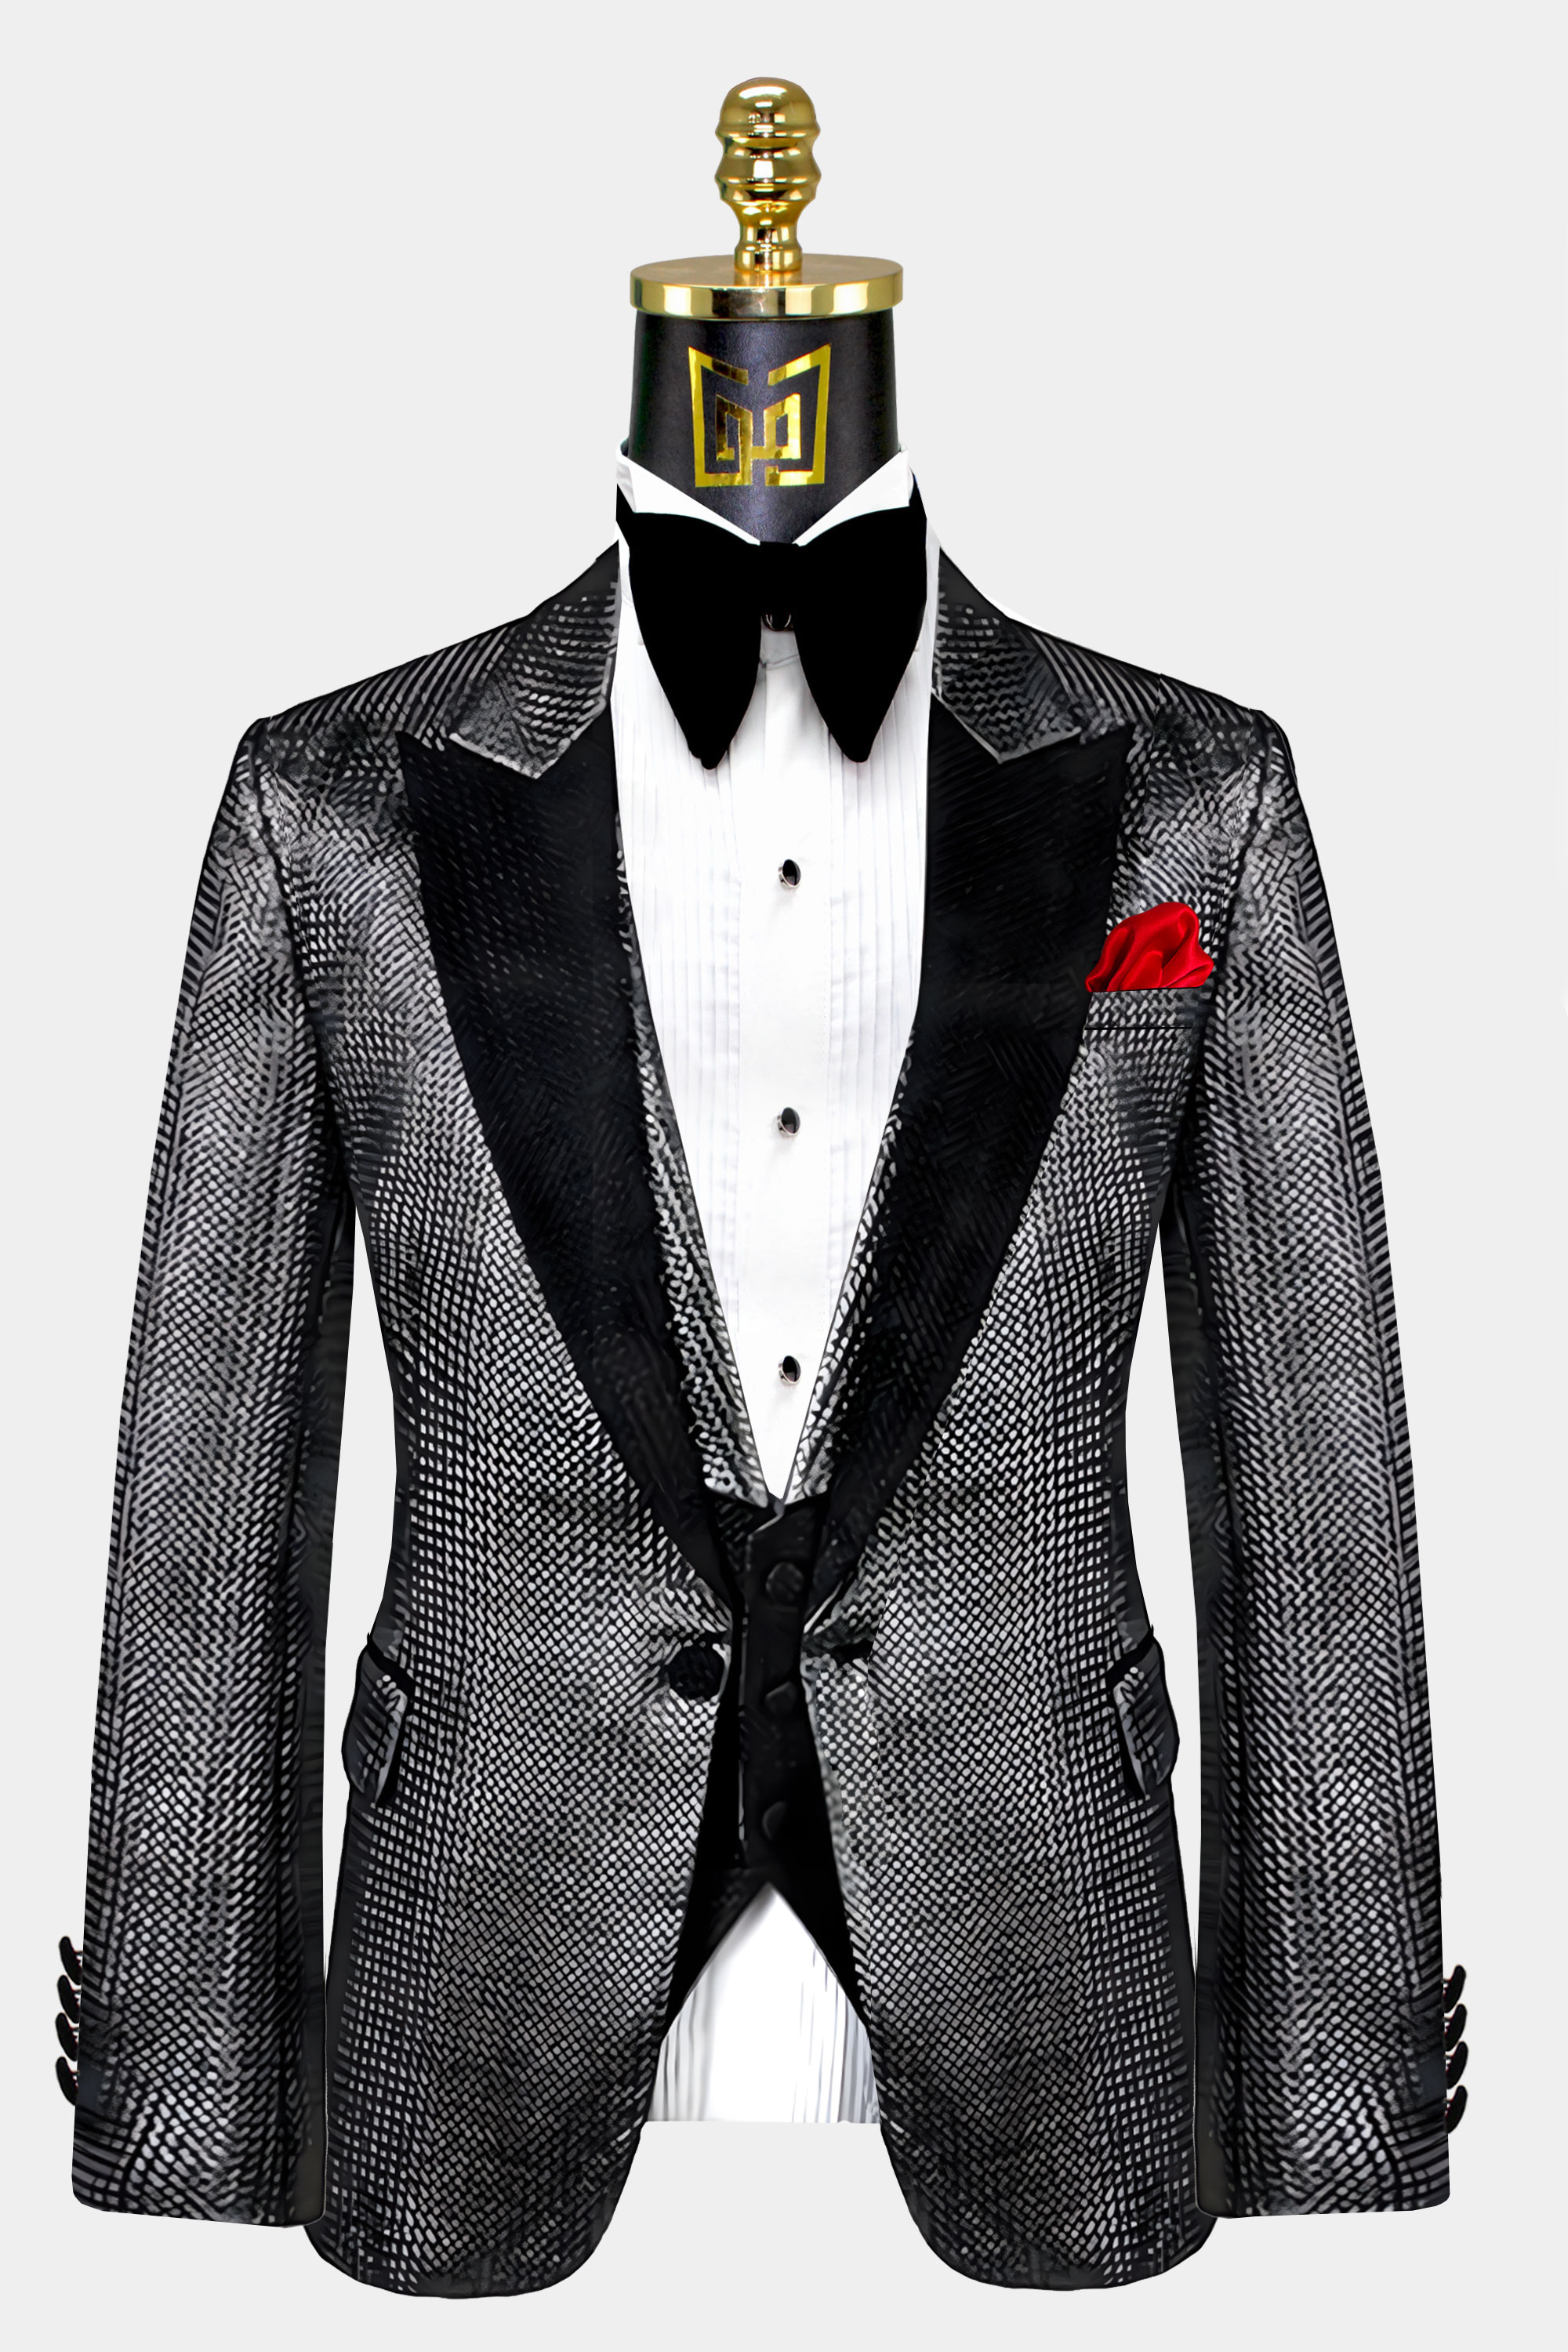 Charcoal-Grey-Tuxedo-Jacket-from-Gentlemansguru.com